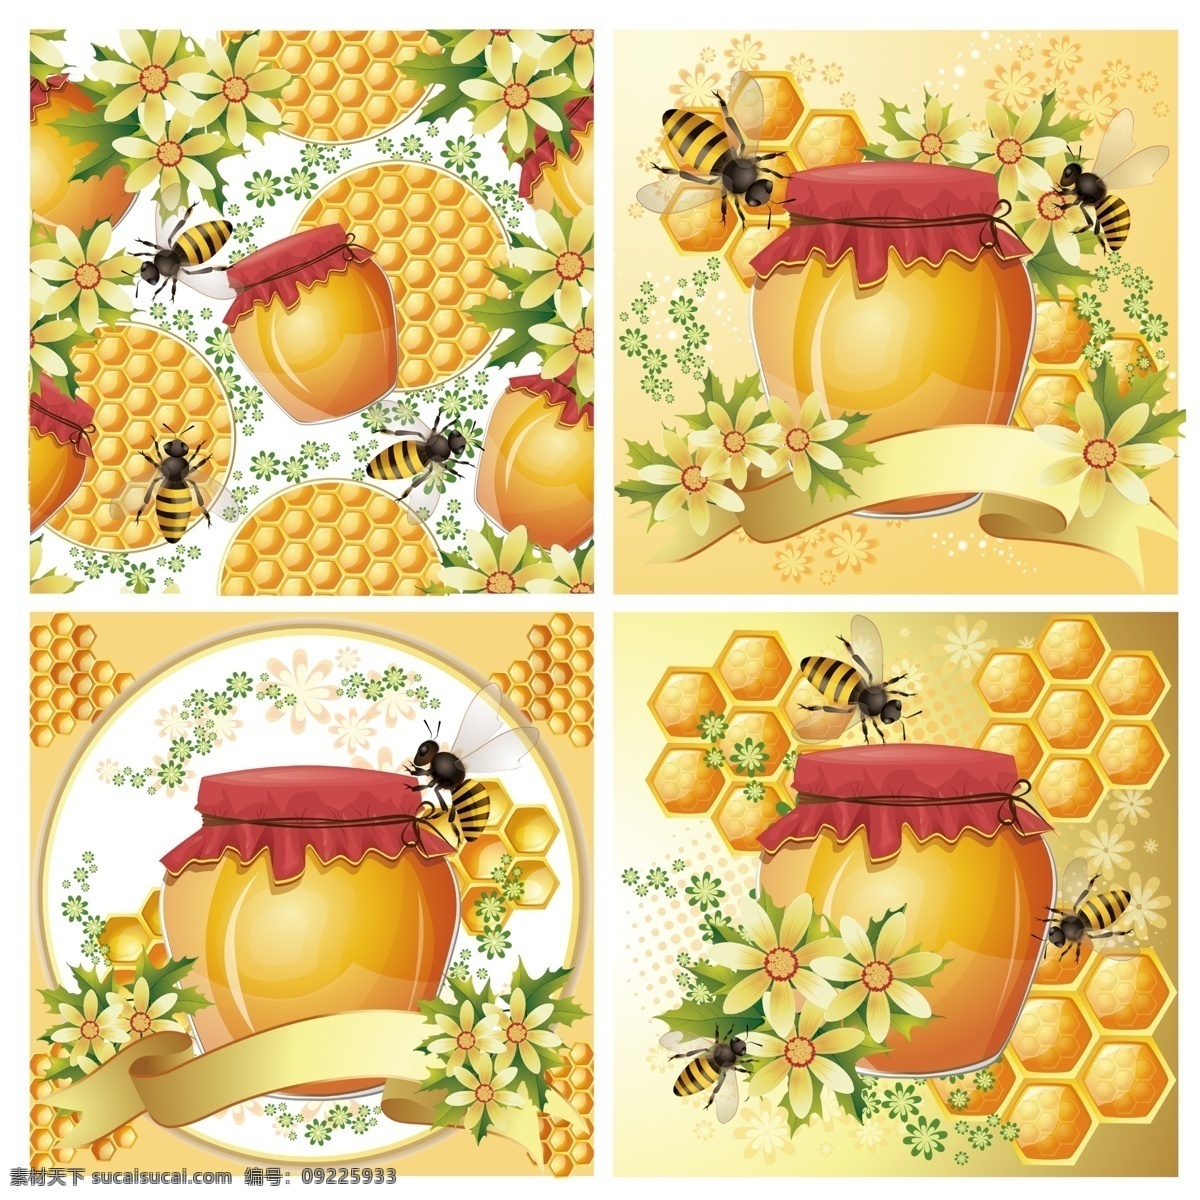 蜜蜂 蜂蜜 蜂蜜图片下载 蜜蜂和蜂蜜 蜂窝 金色 花卉 糖罐 蜂巢 梦幻 背景 底纹 昆虫 蜜蜂主题